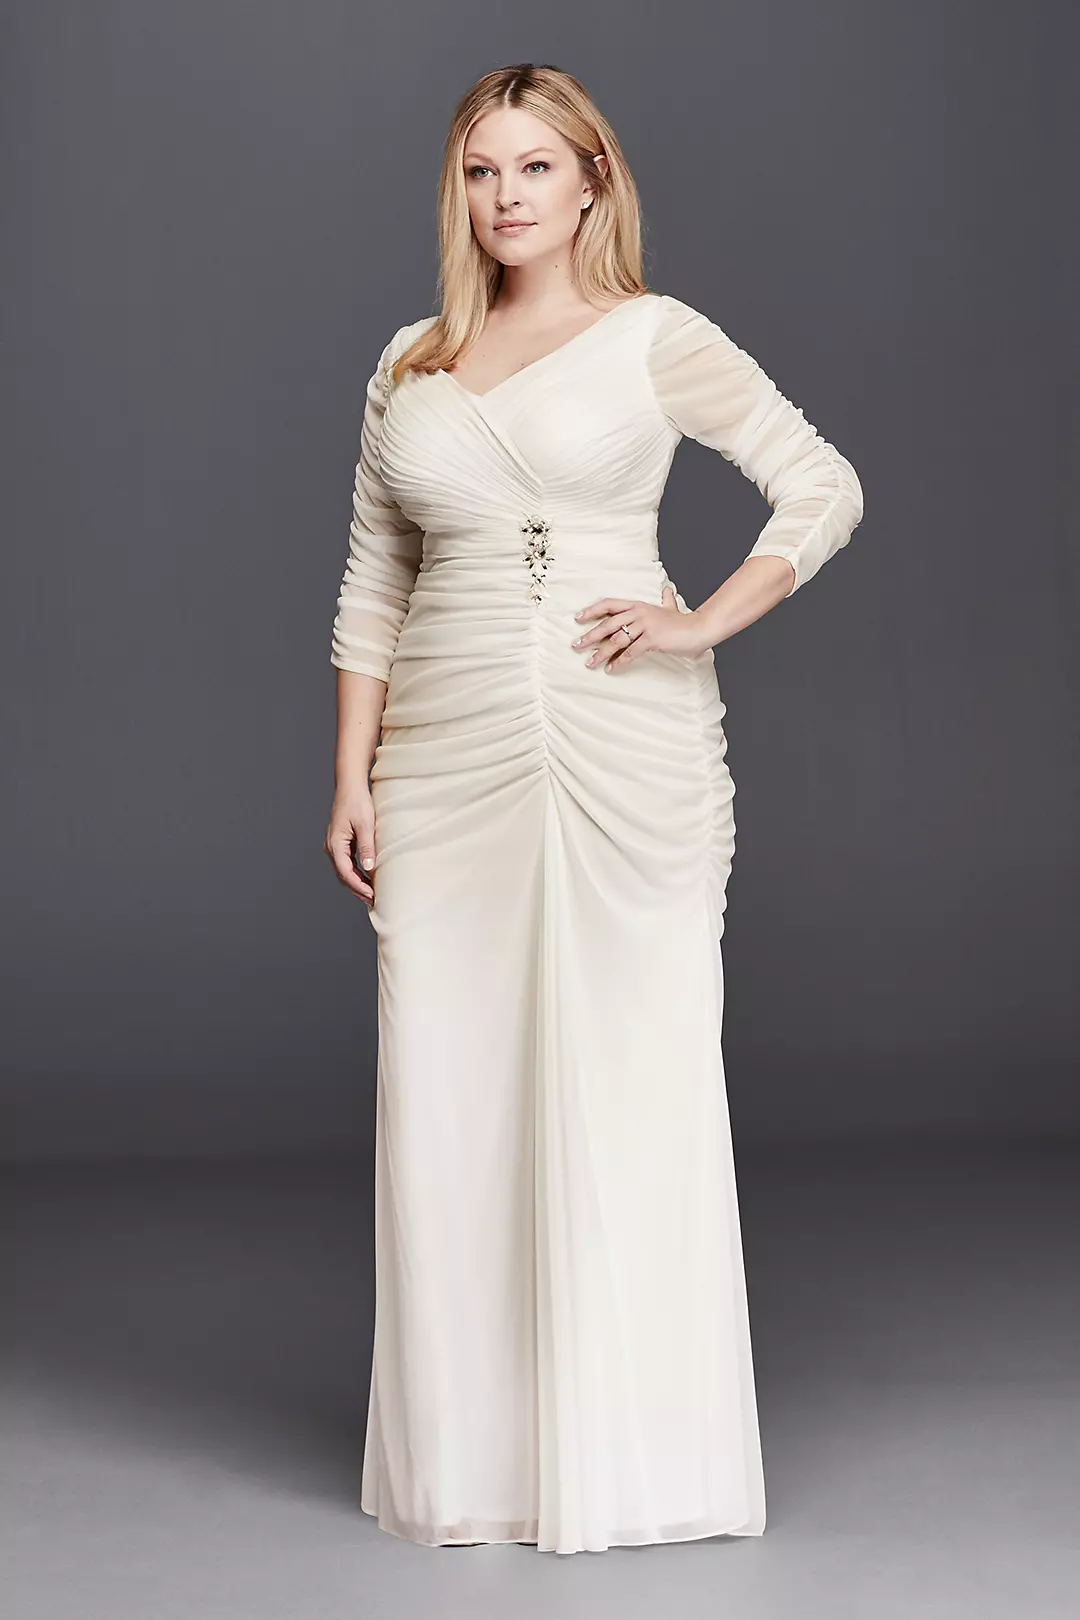 3/4 Illusion Sleeve Wedding Dress with Ruching Image